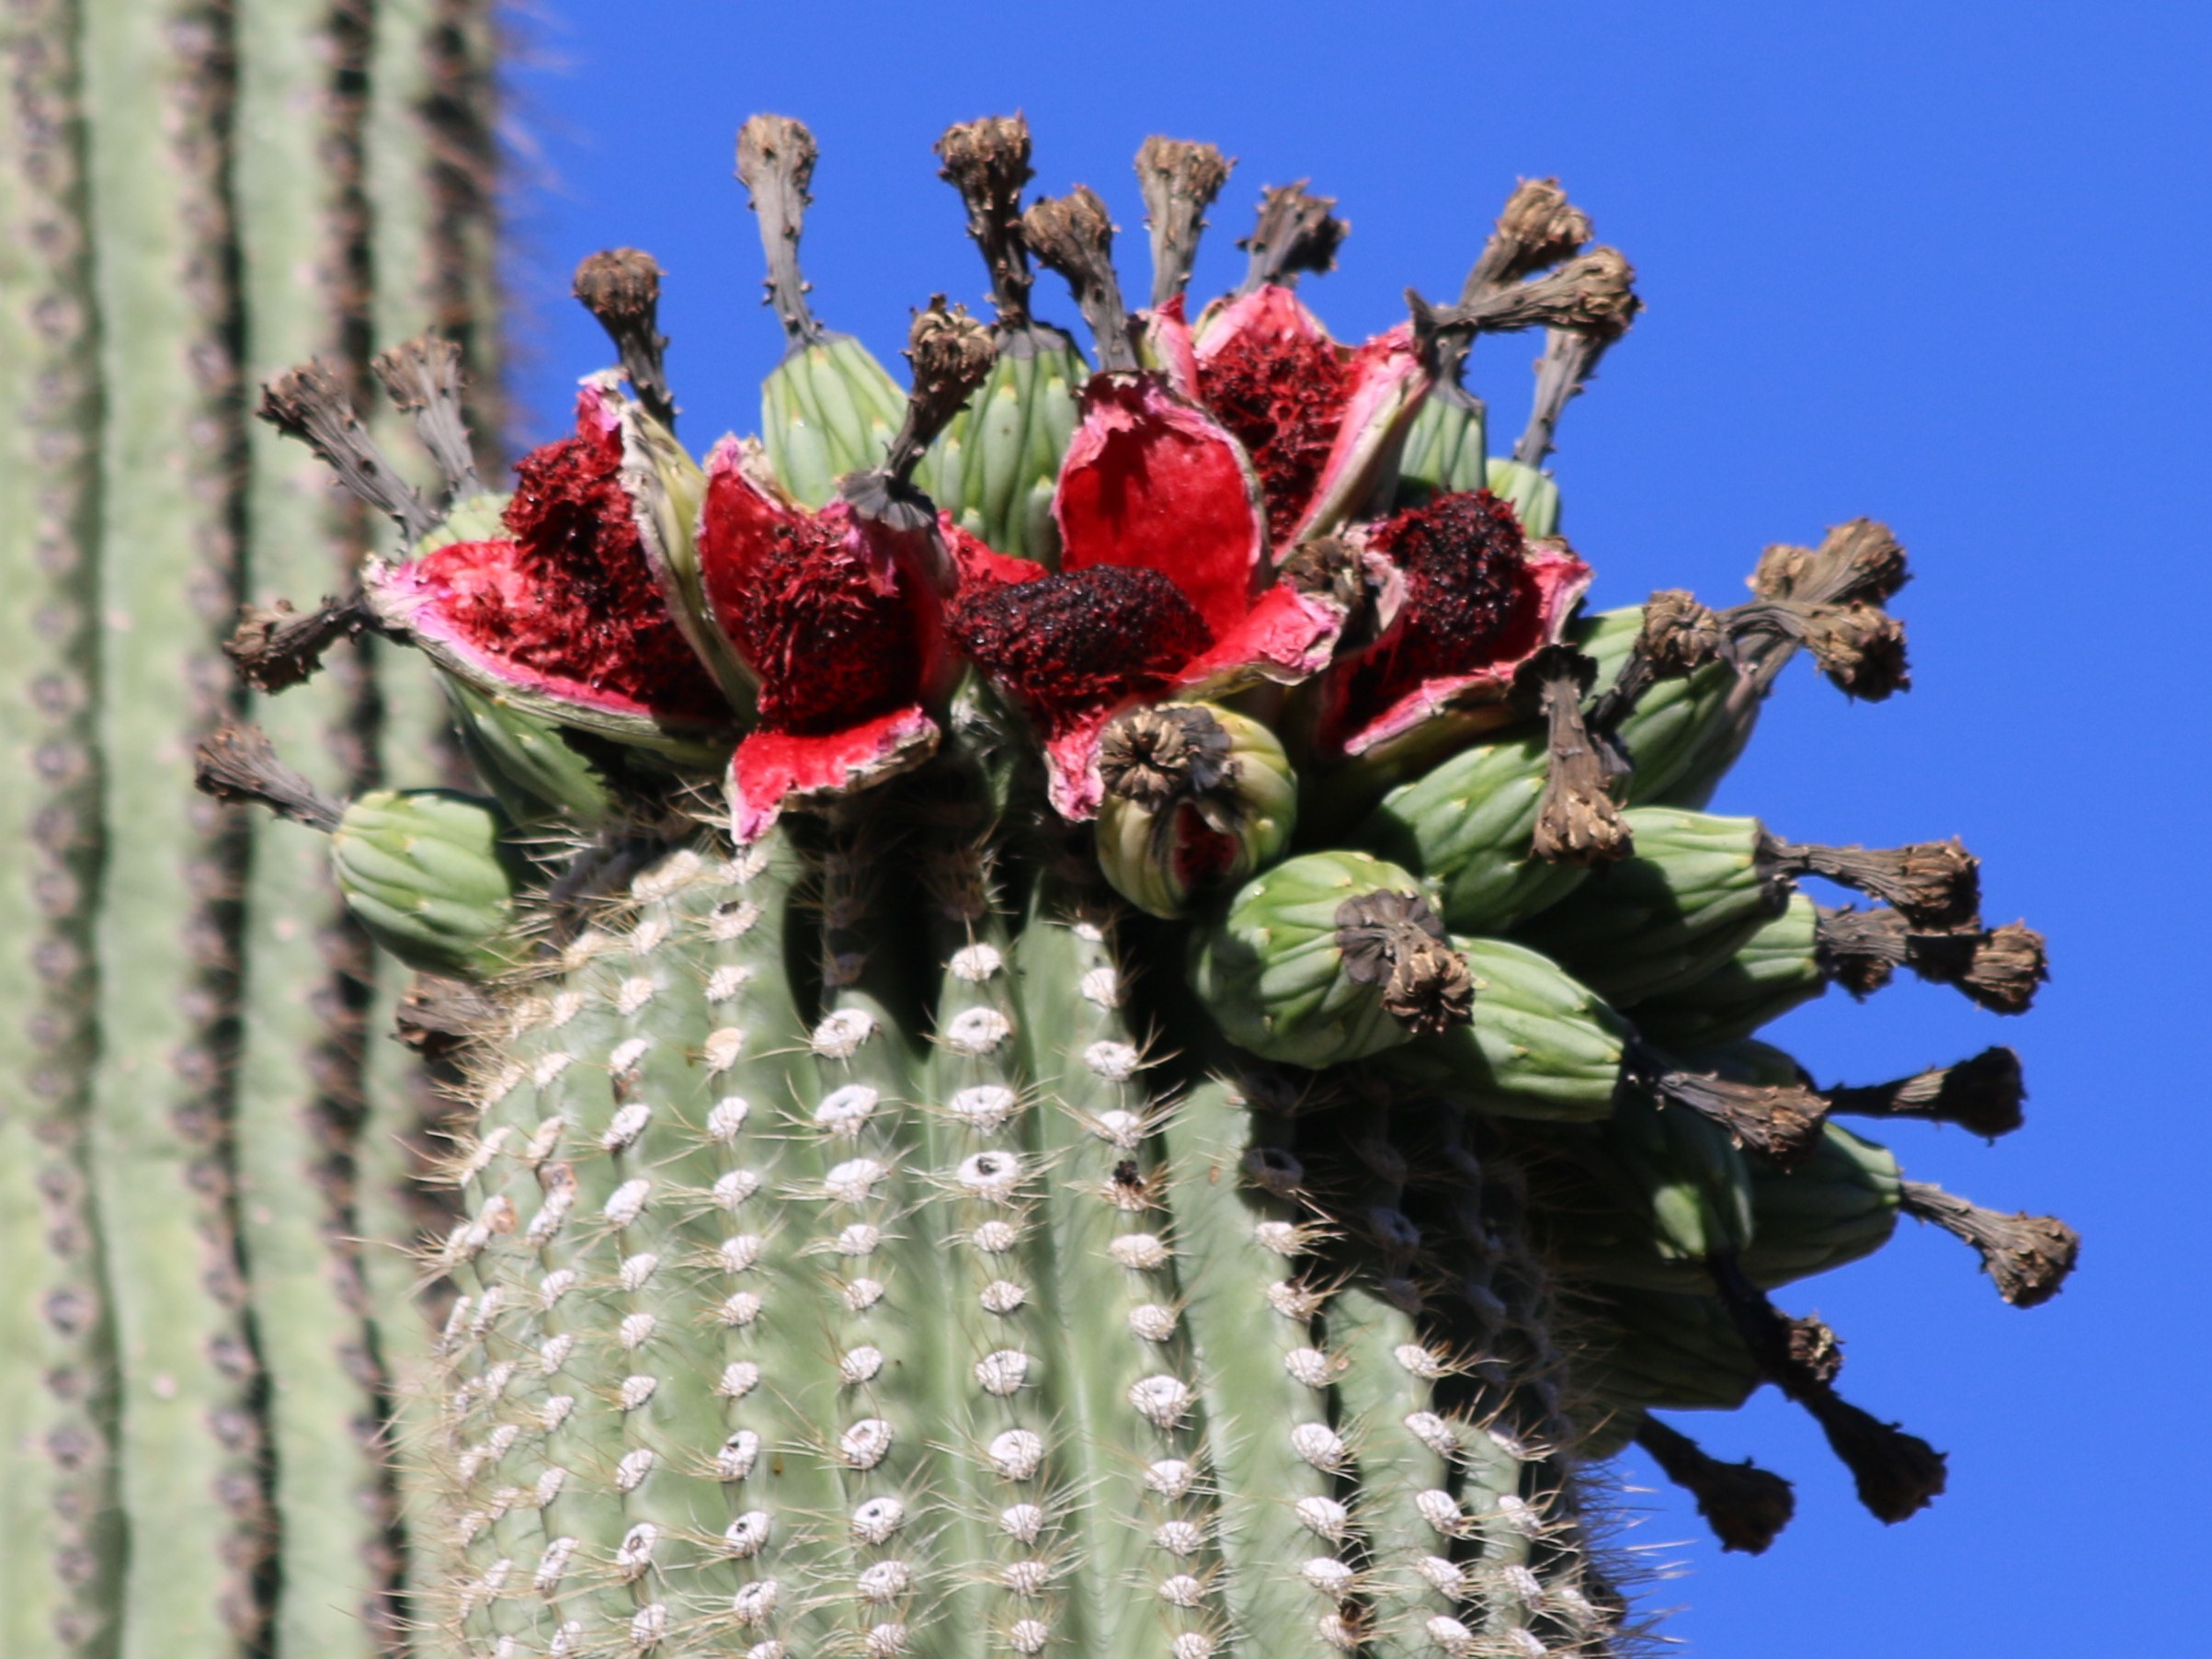 sonoran desert cactus fruit